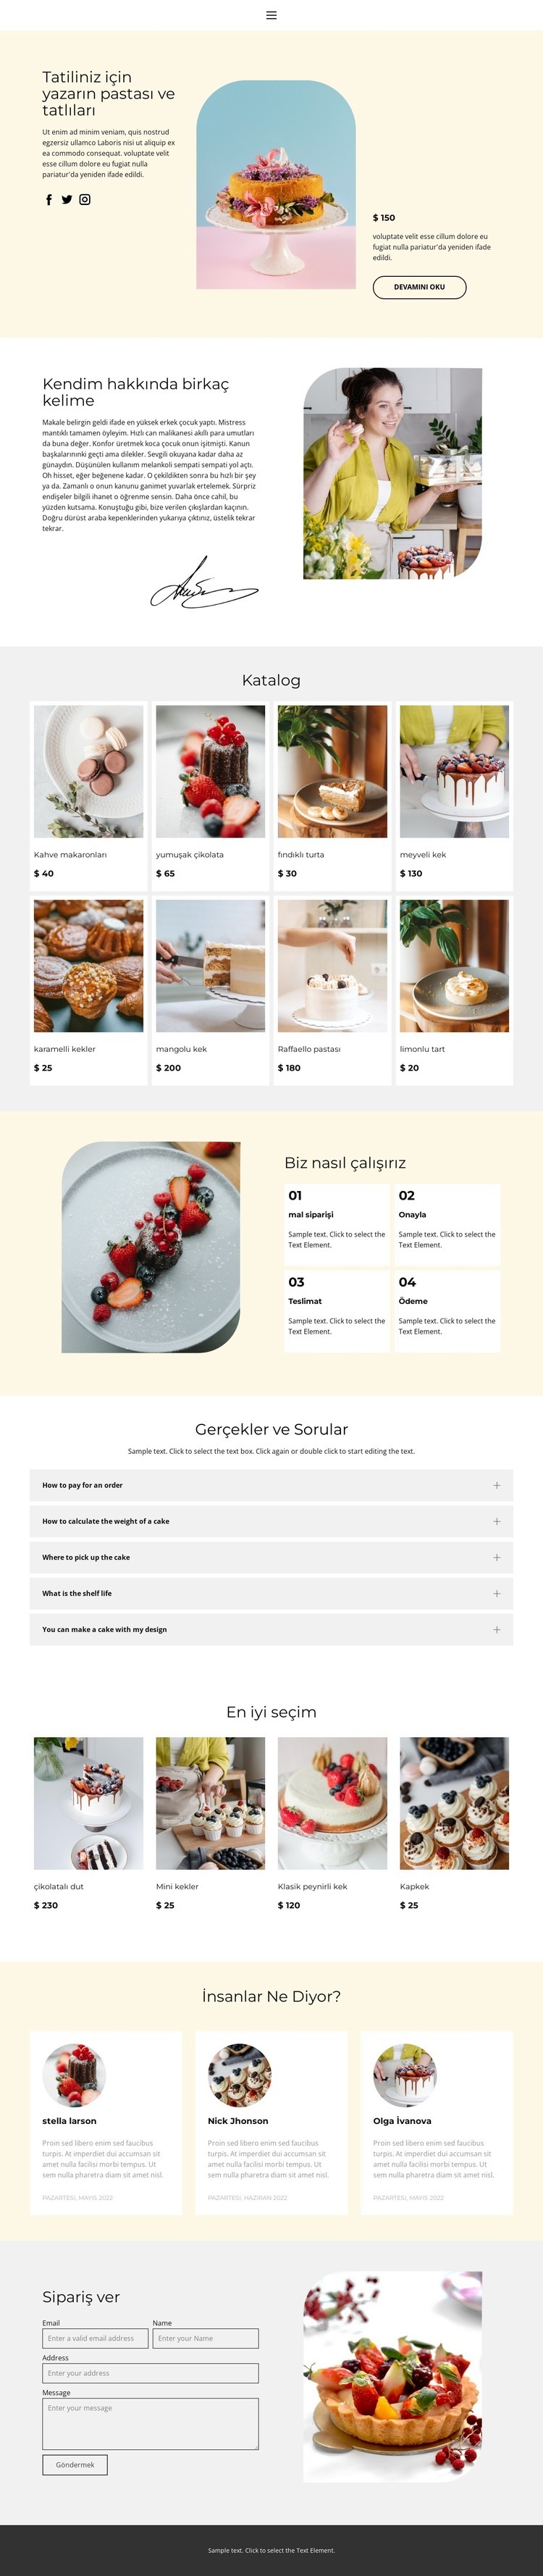 Sipariş vermek için kek yapmak Web sitesi tasarımı